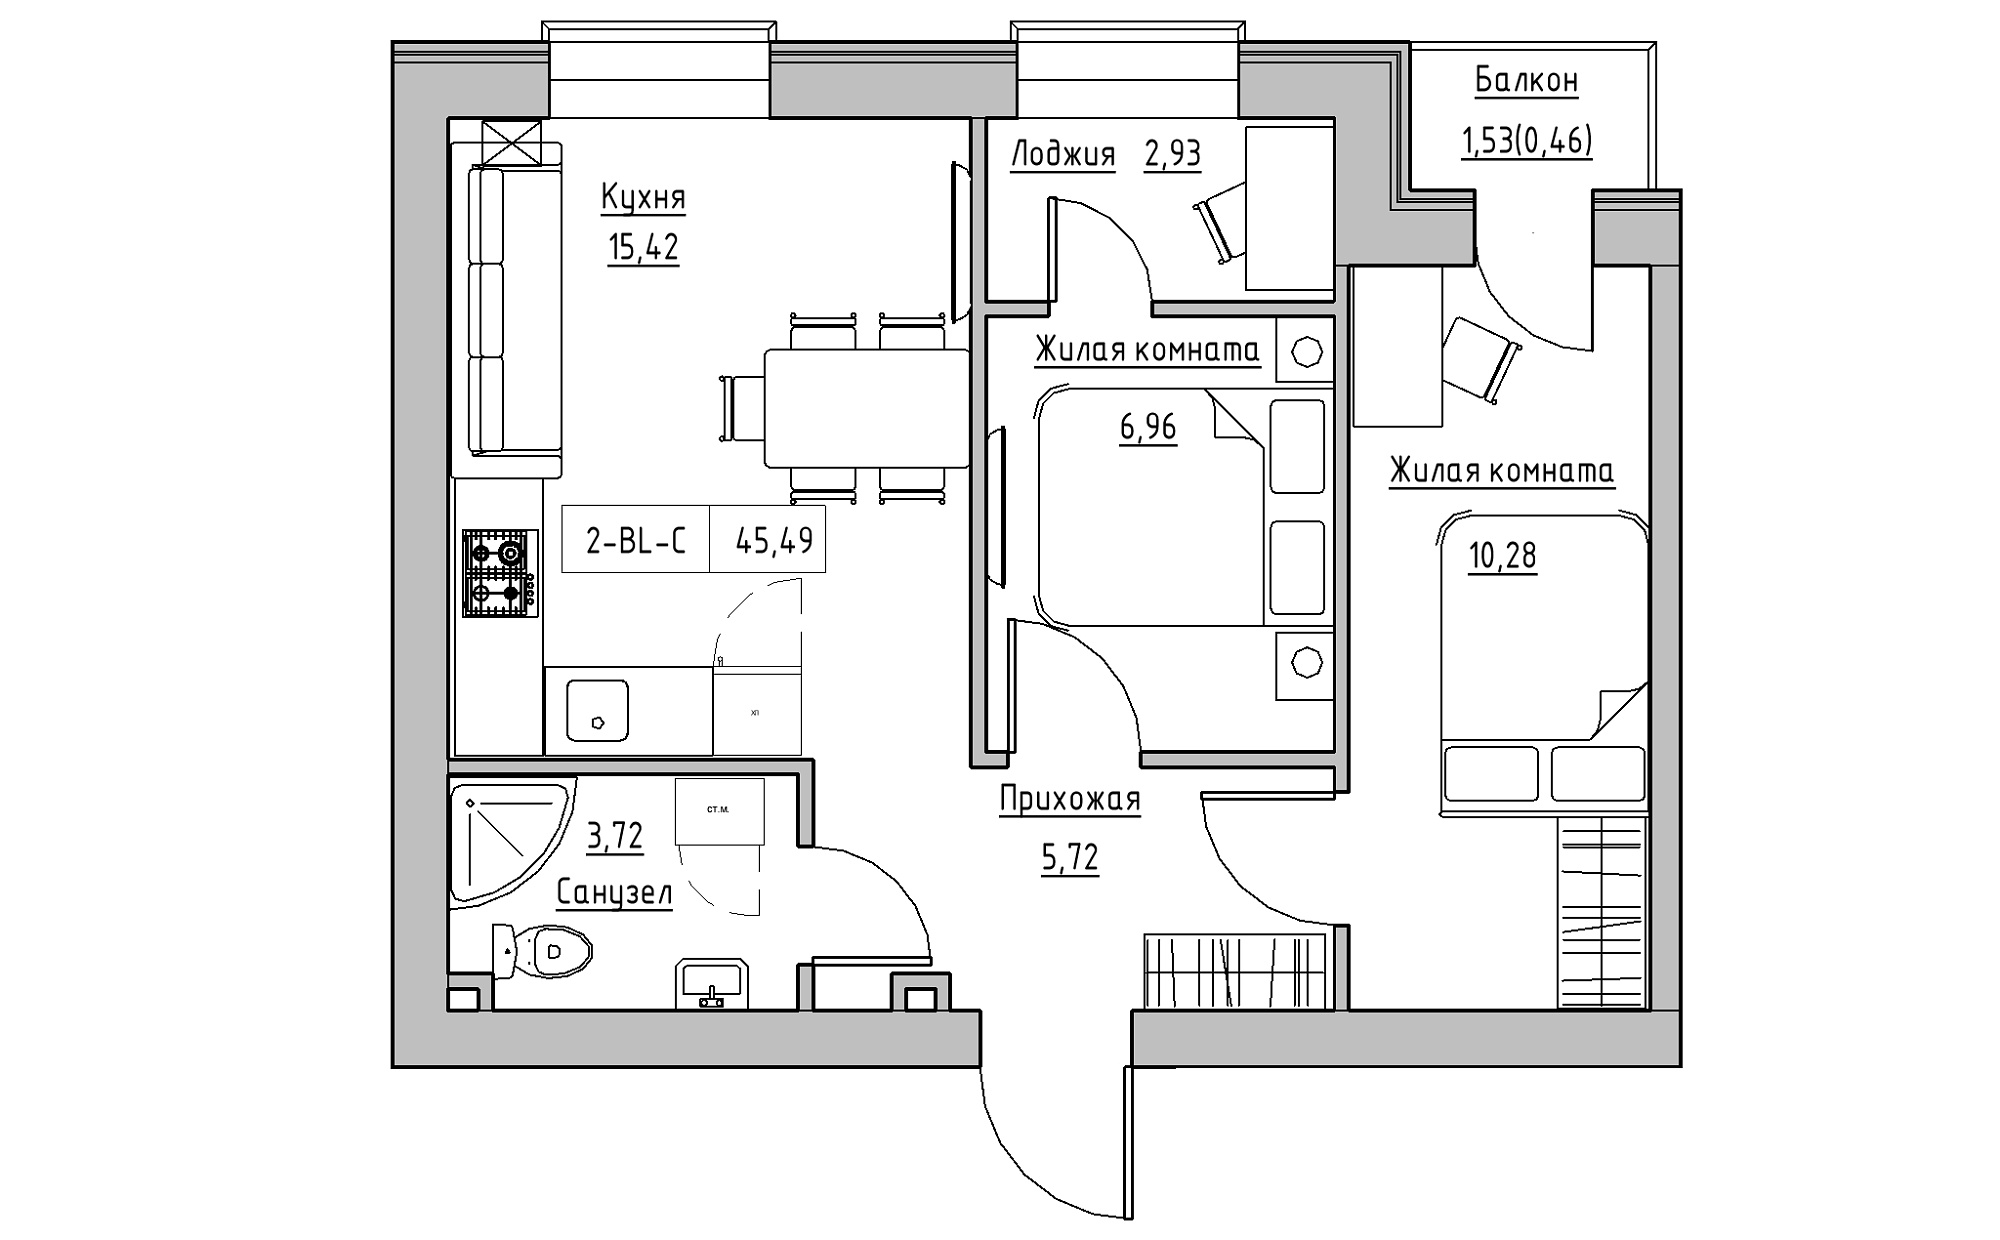 Планування 2-к квартира площею 45.49м2, KS-022-03/0008.